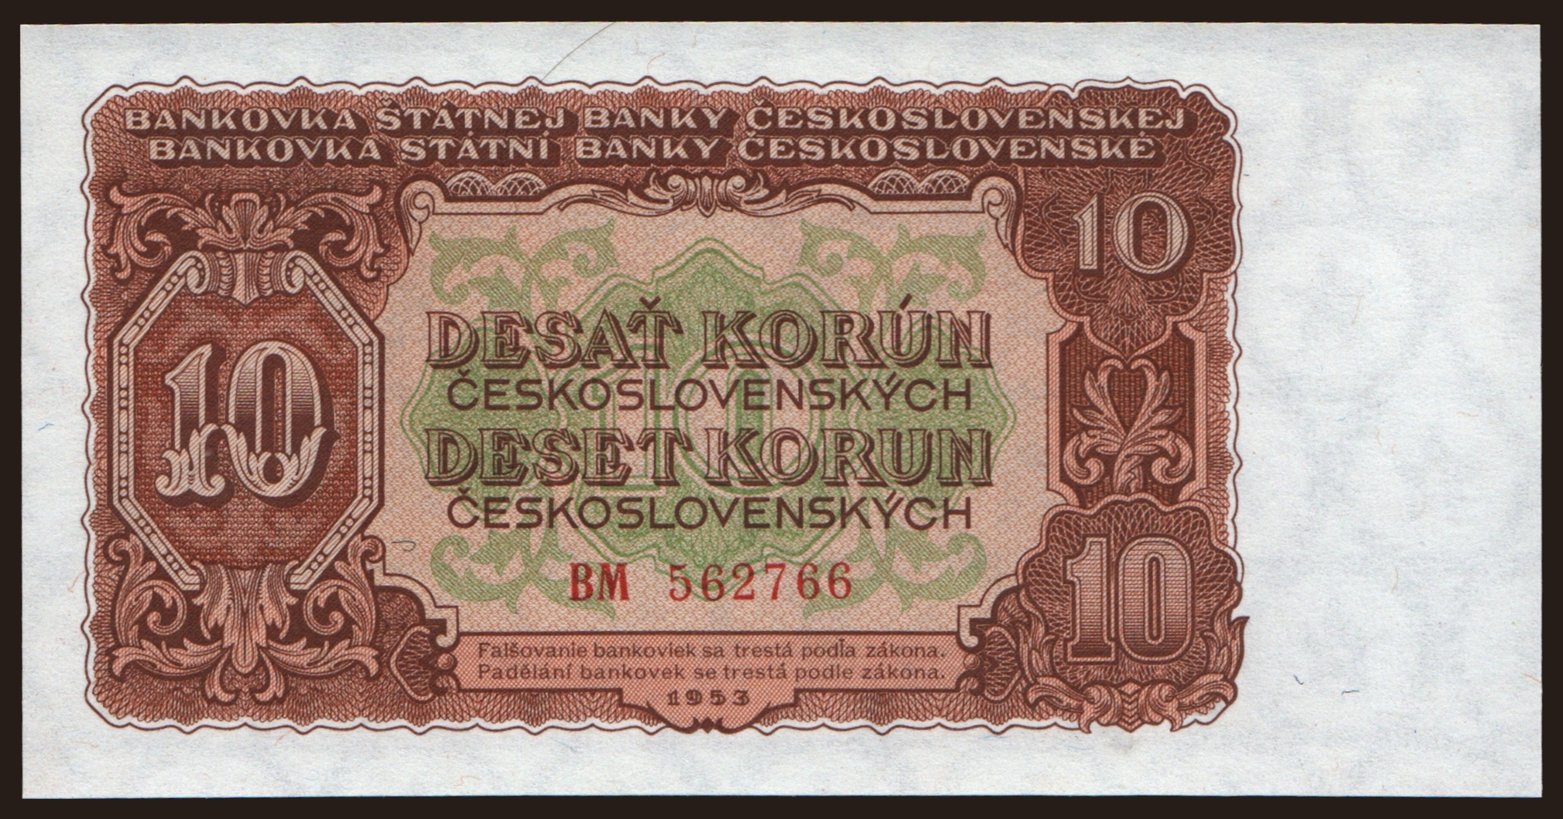 10 korun, 1953